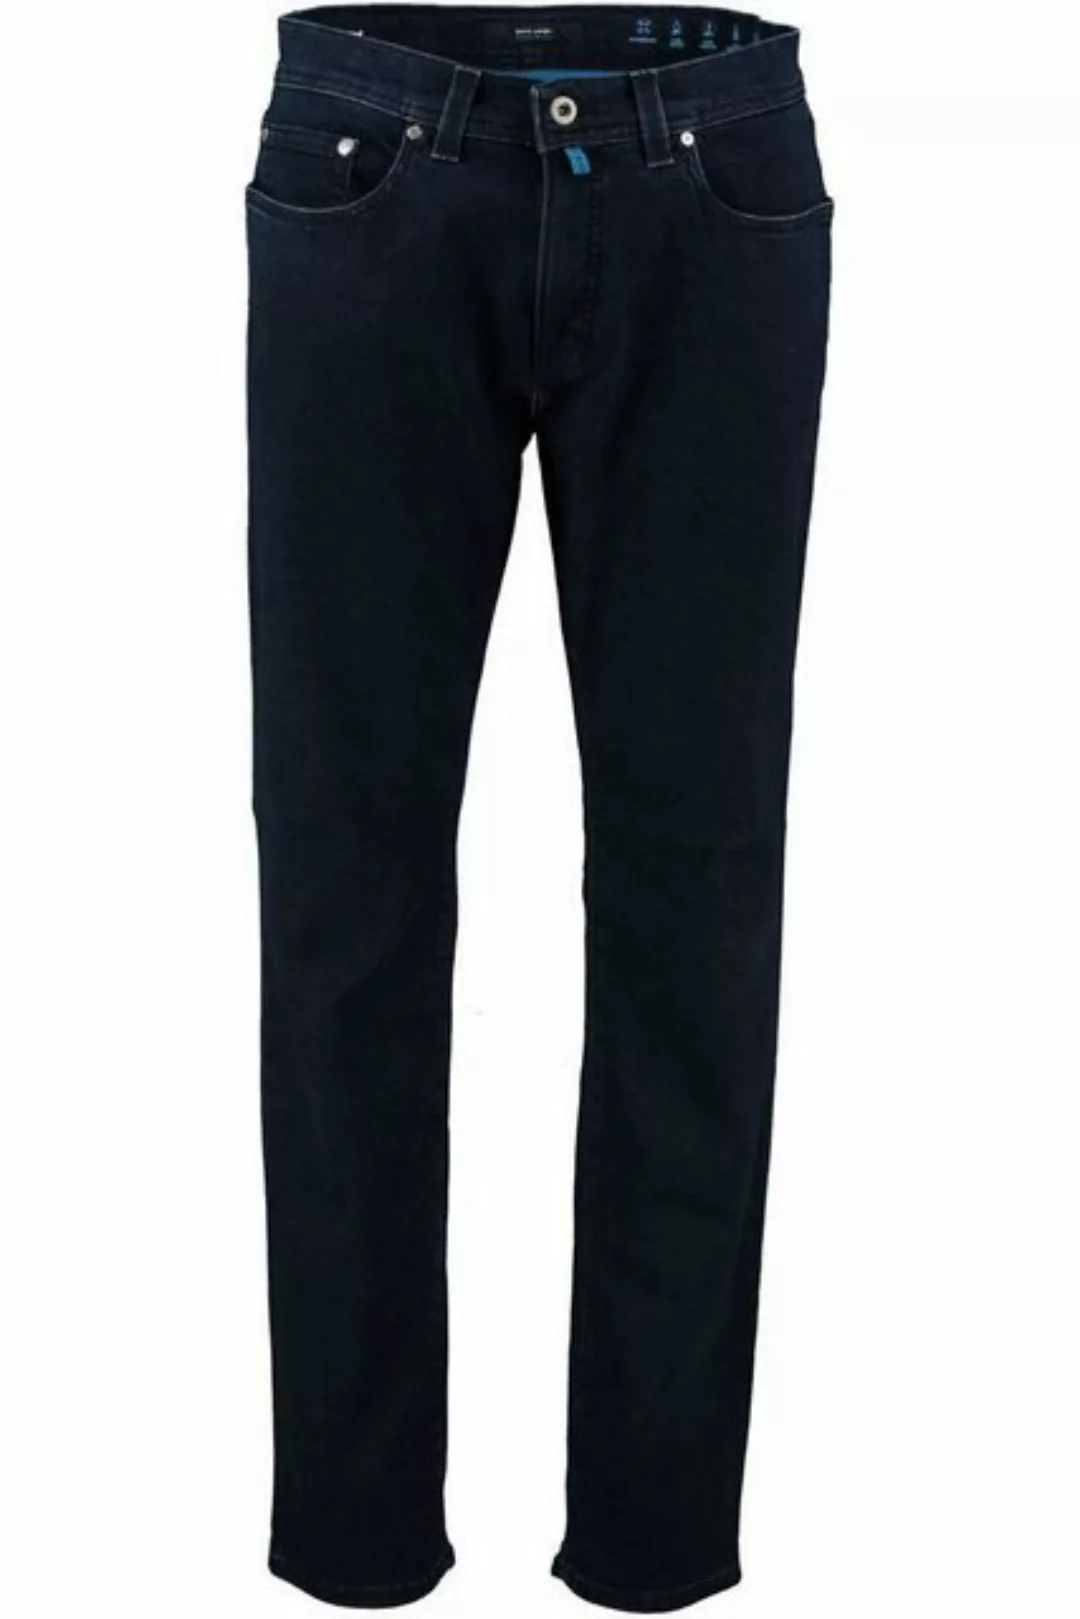 Pierre Cardin Jeans Lyon Tapered Future Flex Dunkel Blau - Größe W 35 - L 3 günstig online kaufen